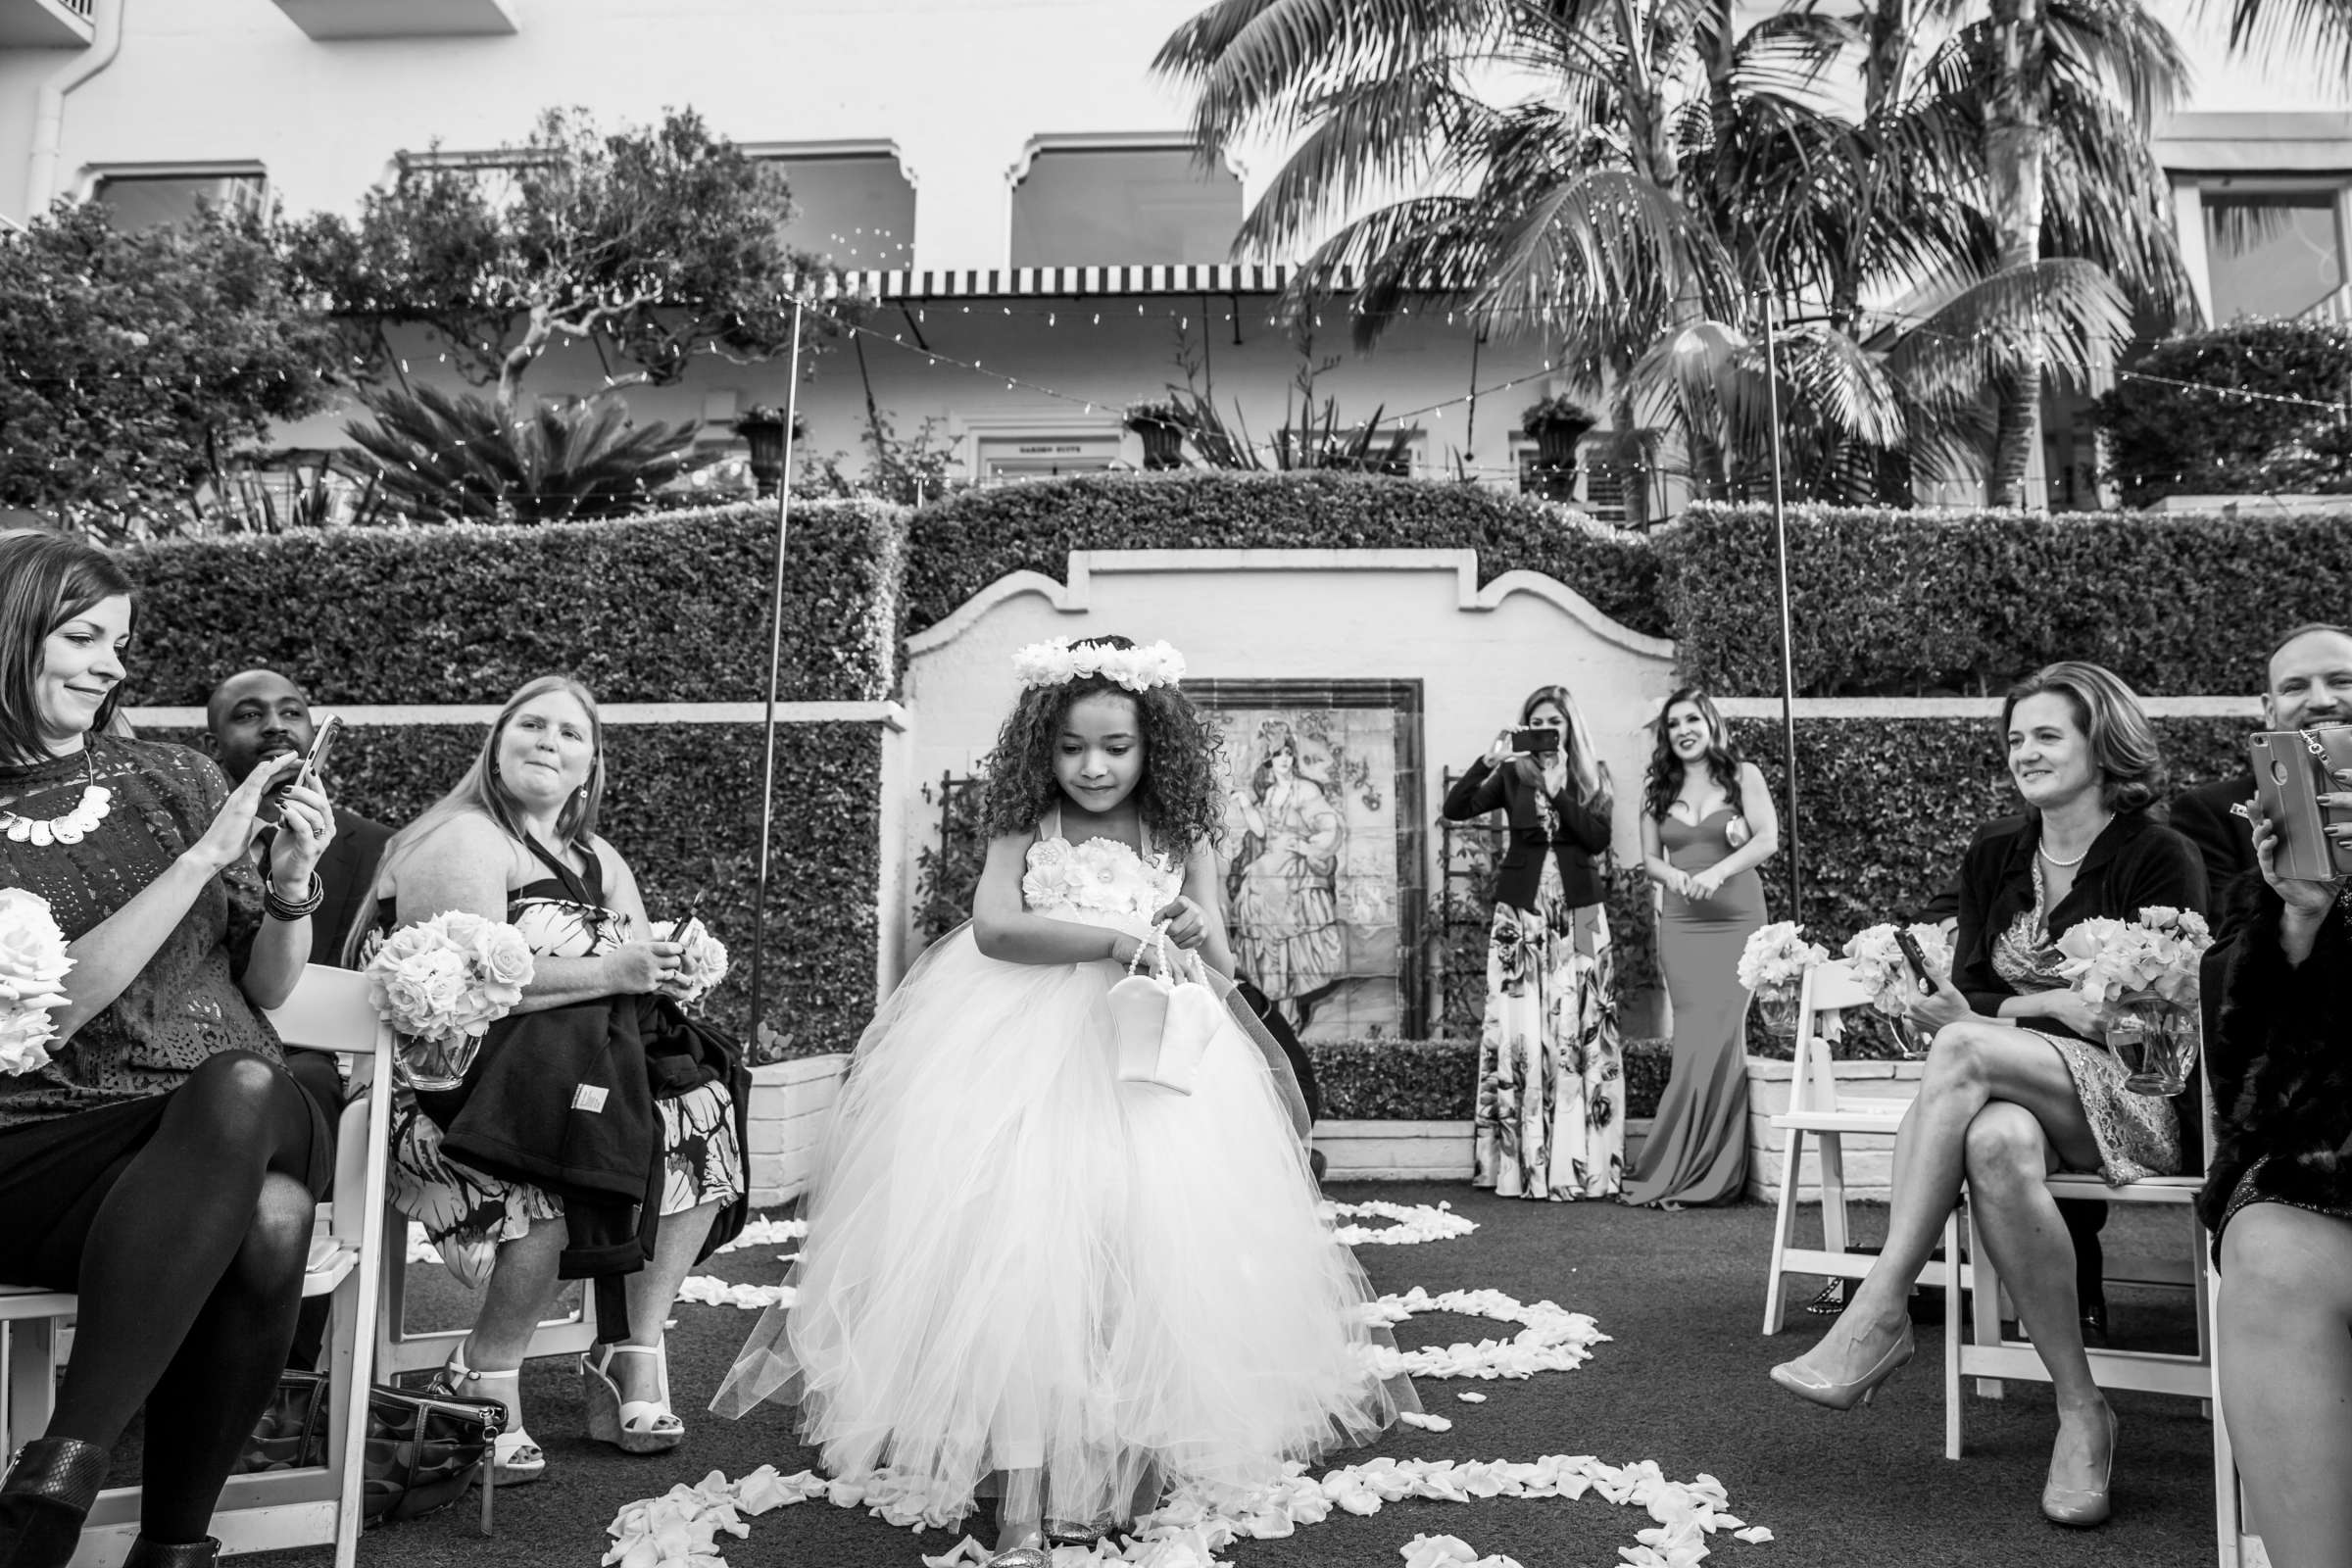 La Valencia Wedding coordinated by La Valencia, Soheila and Steven Wedding Photo #302992 by True Photography